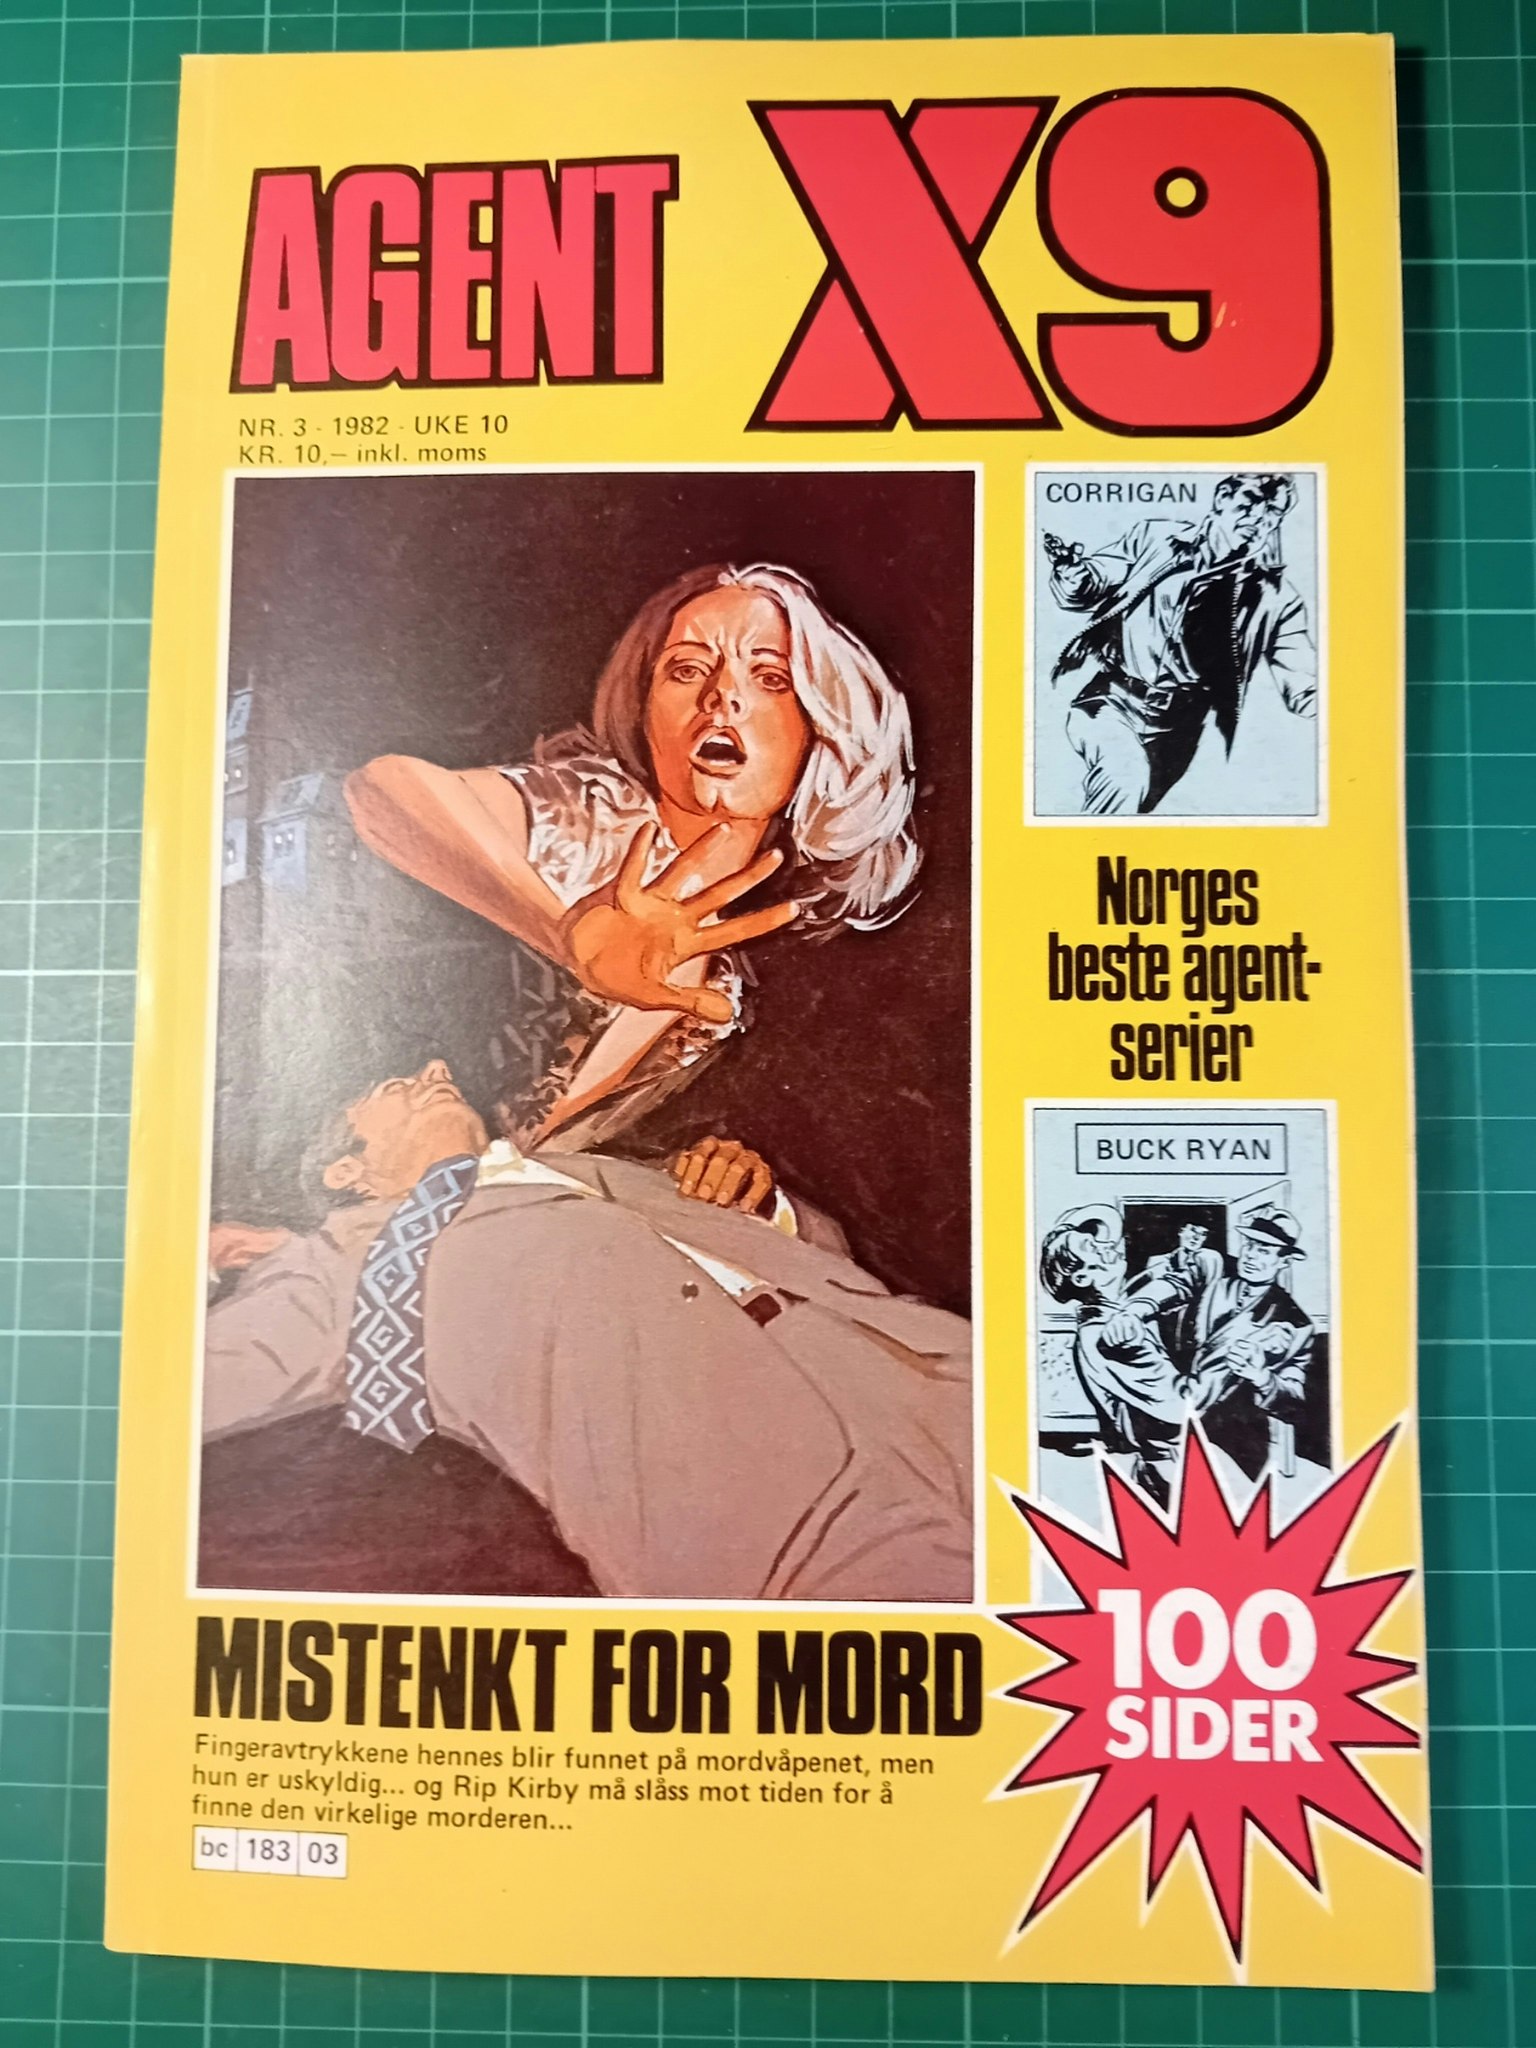 Agent X9 1982 - 03